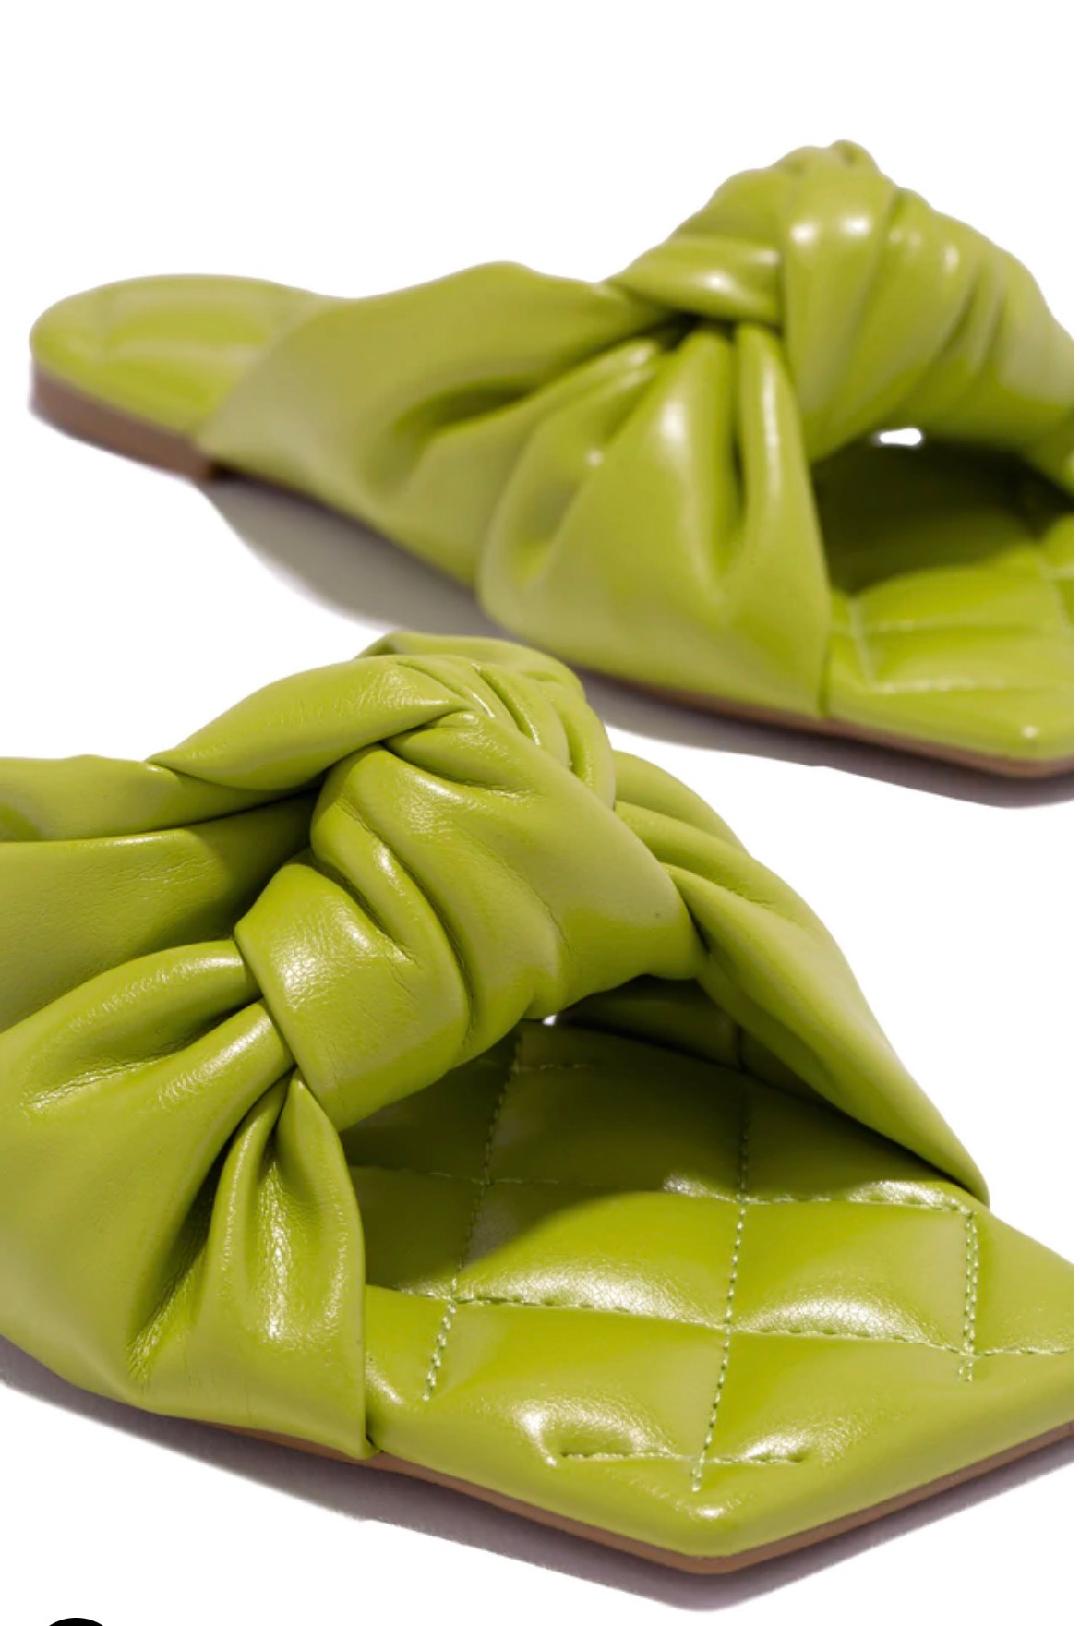 Blaire Sandals- Lime